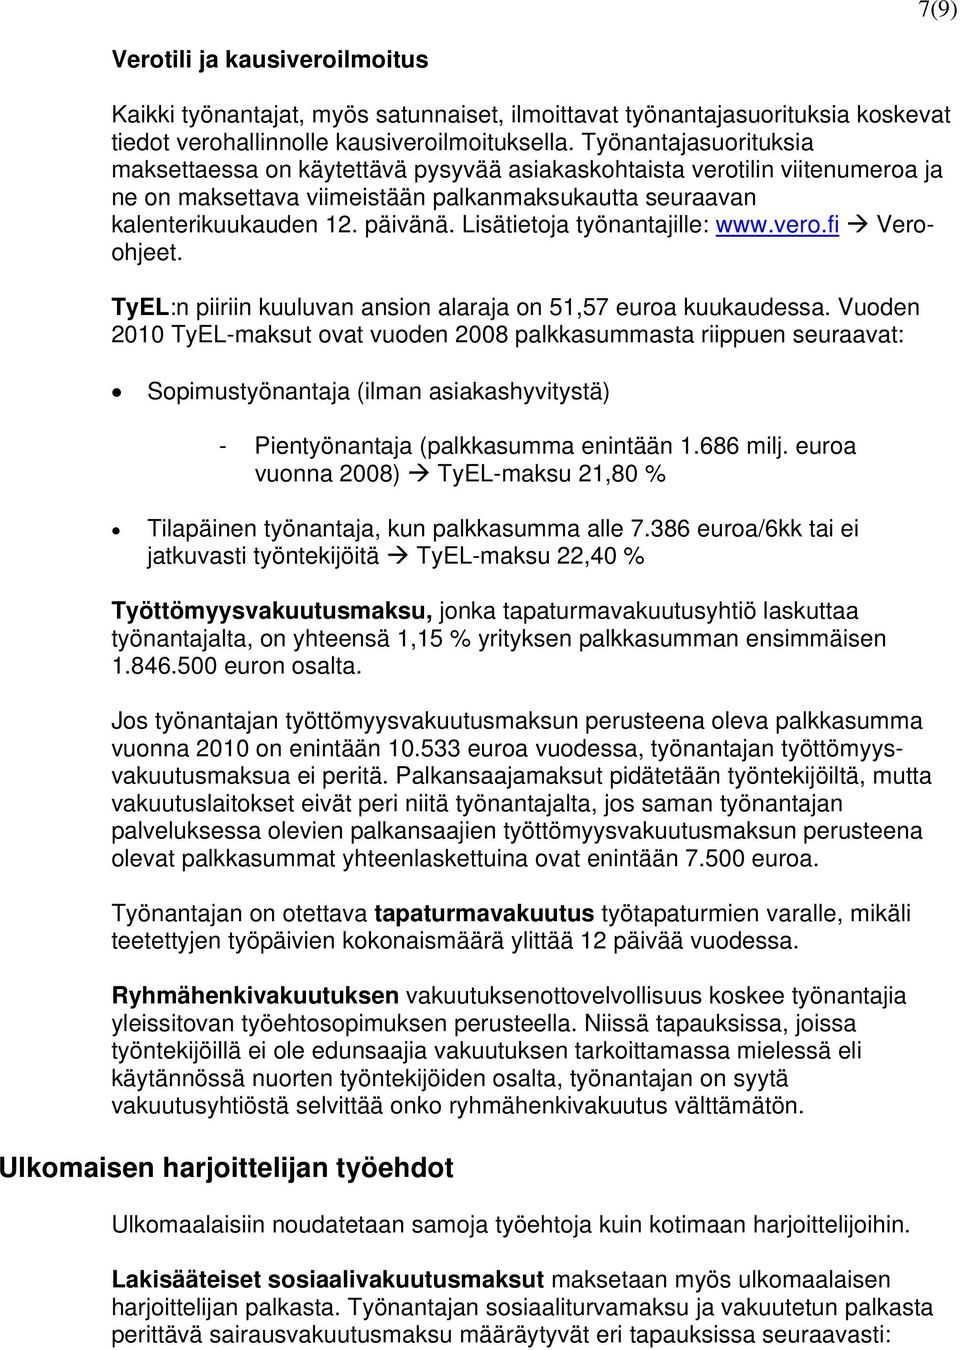 Lisätietoja työnantajille: www.vero.fi Veroohjeet. TyEL:n piiriin kuuluvan ansion alaraja on 51,57 euroa kuukaudessa.